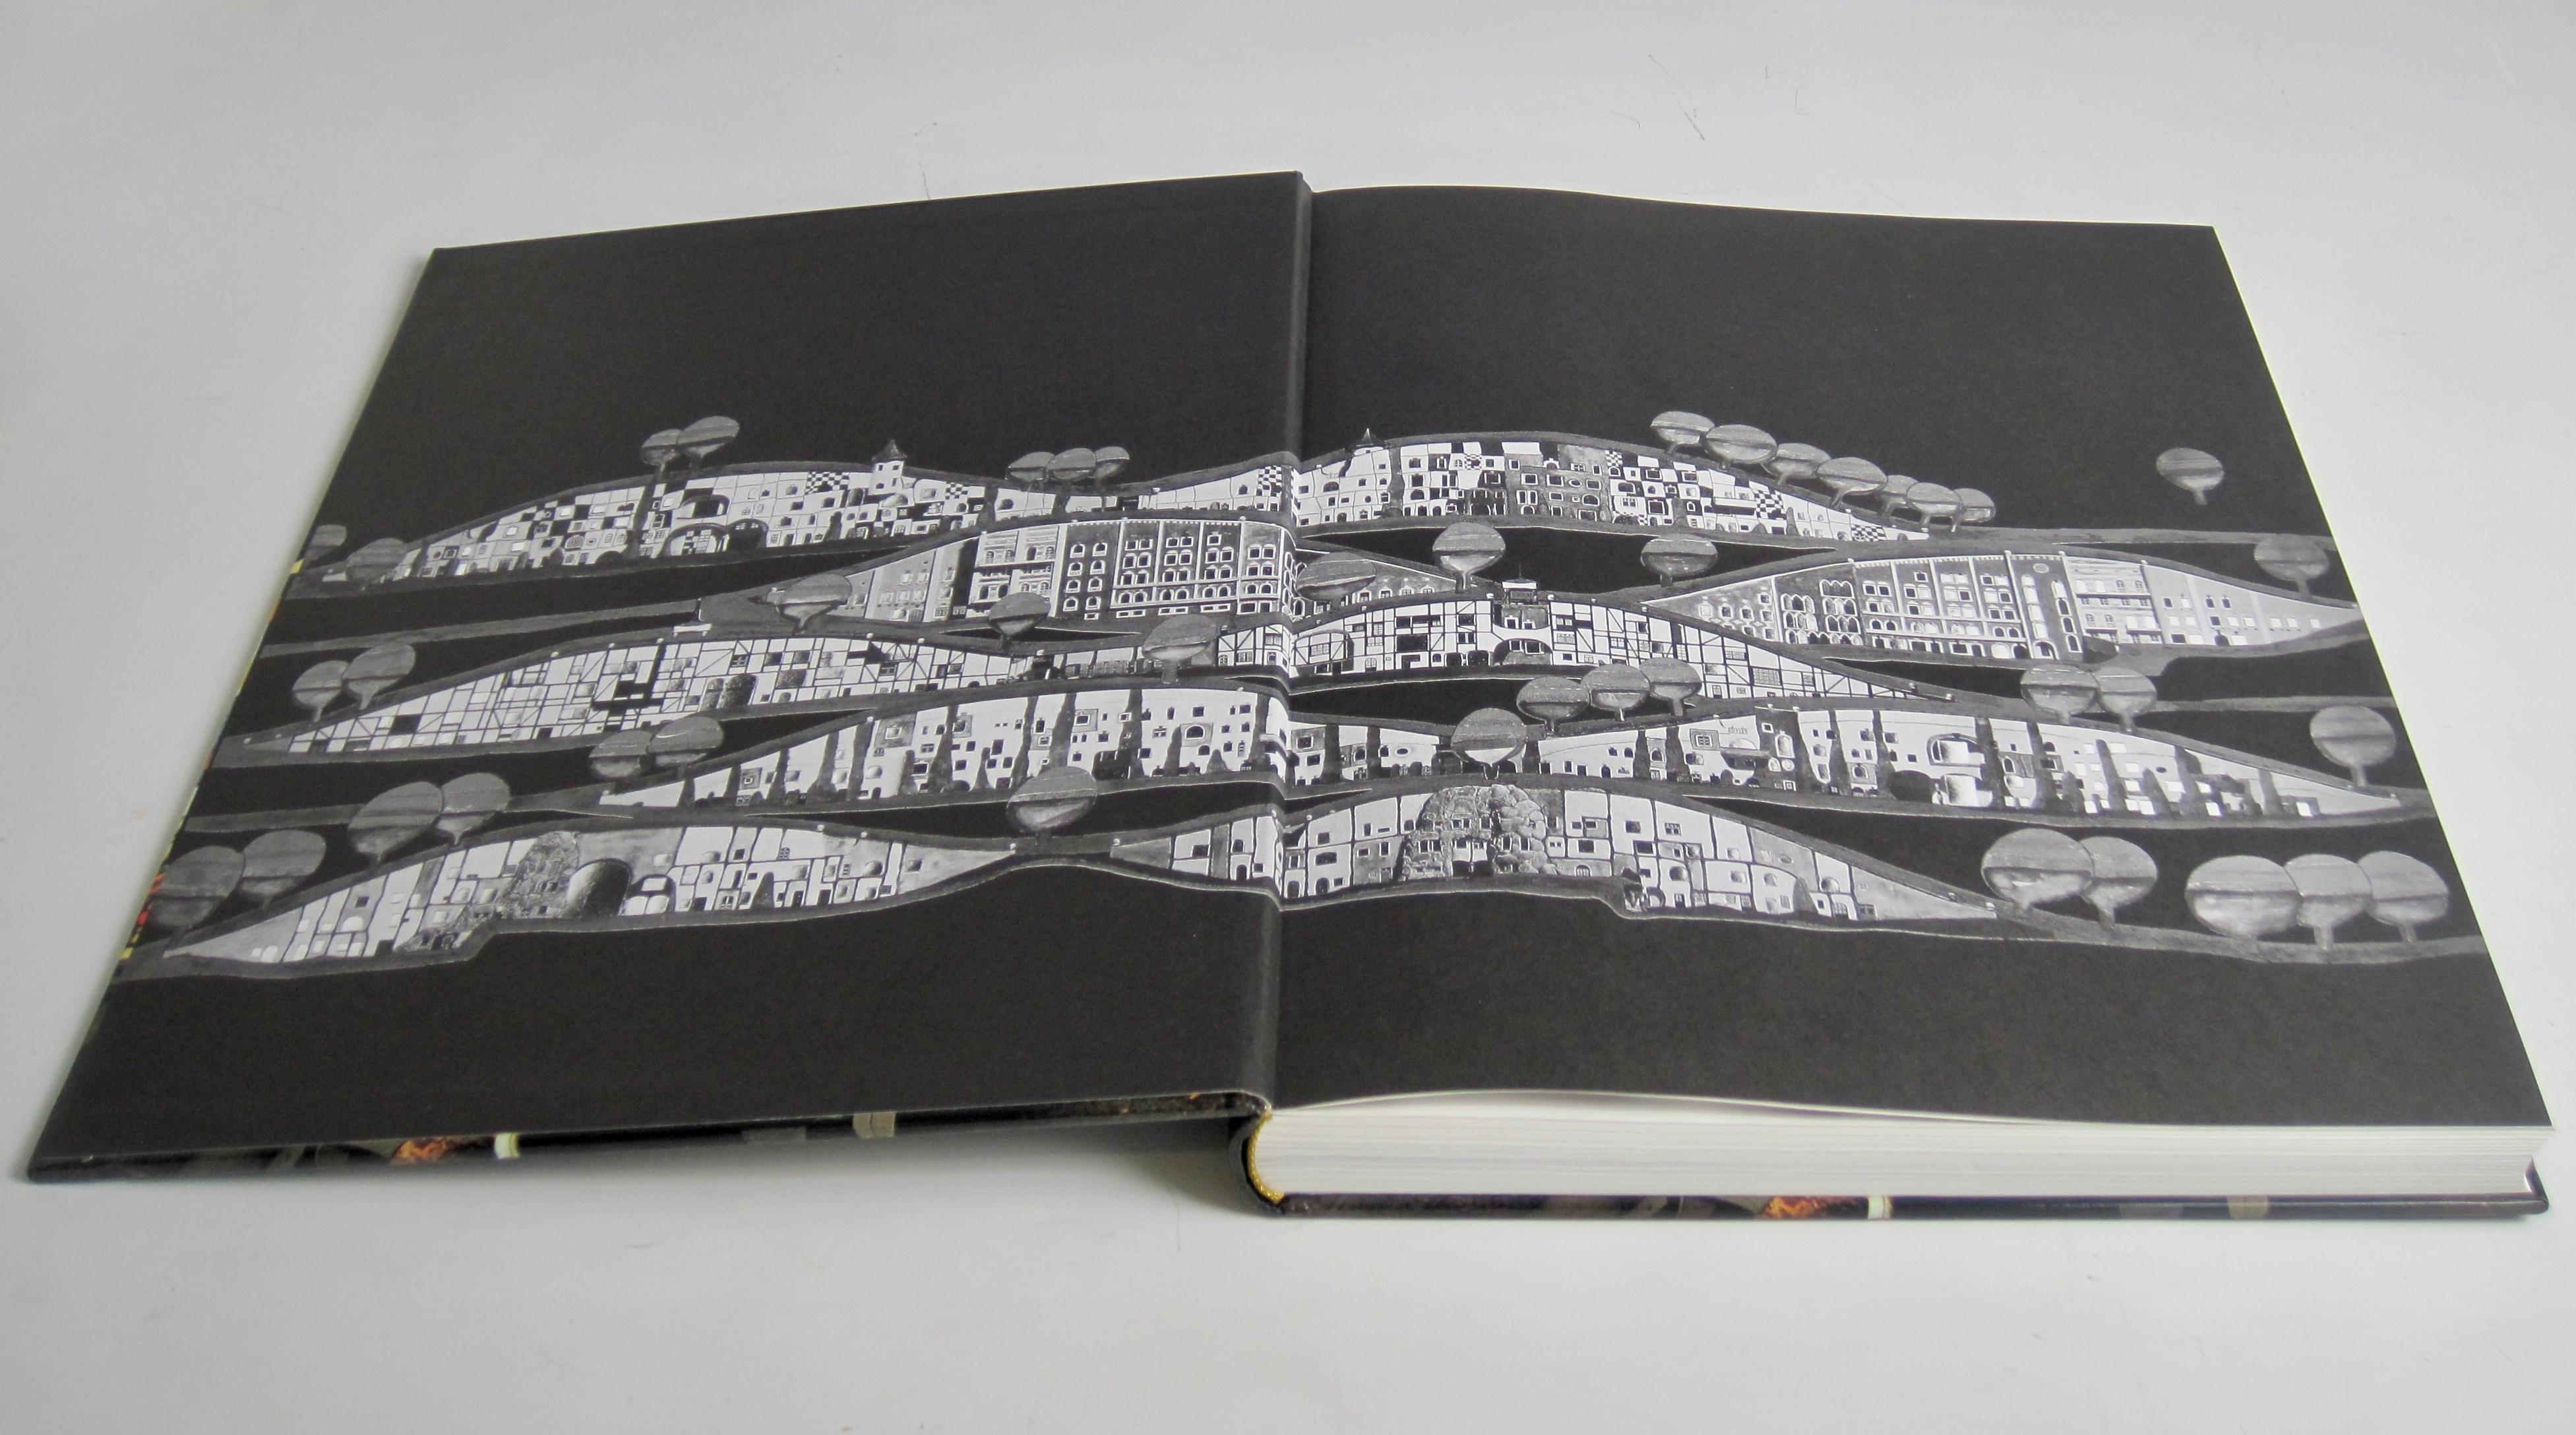 German Taschen Hundertwasser Architecture Hardcover Coffee Table Book